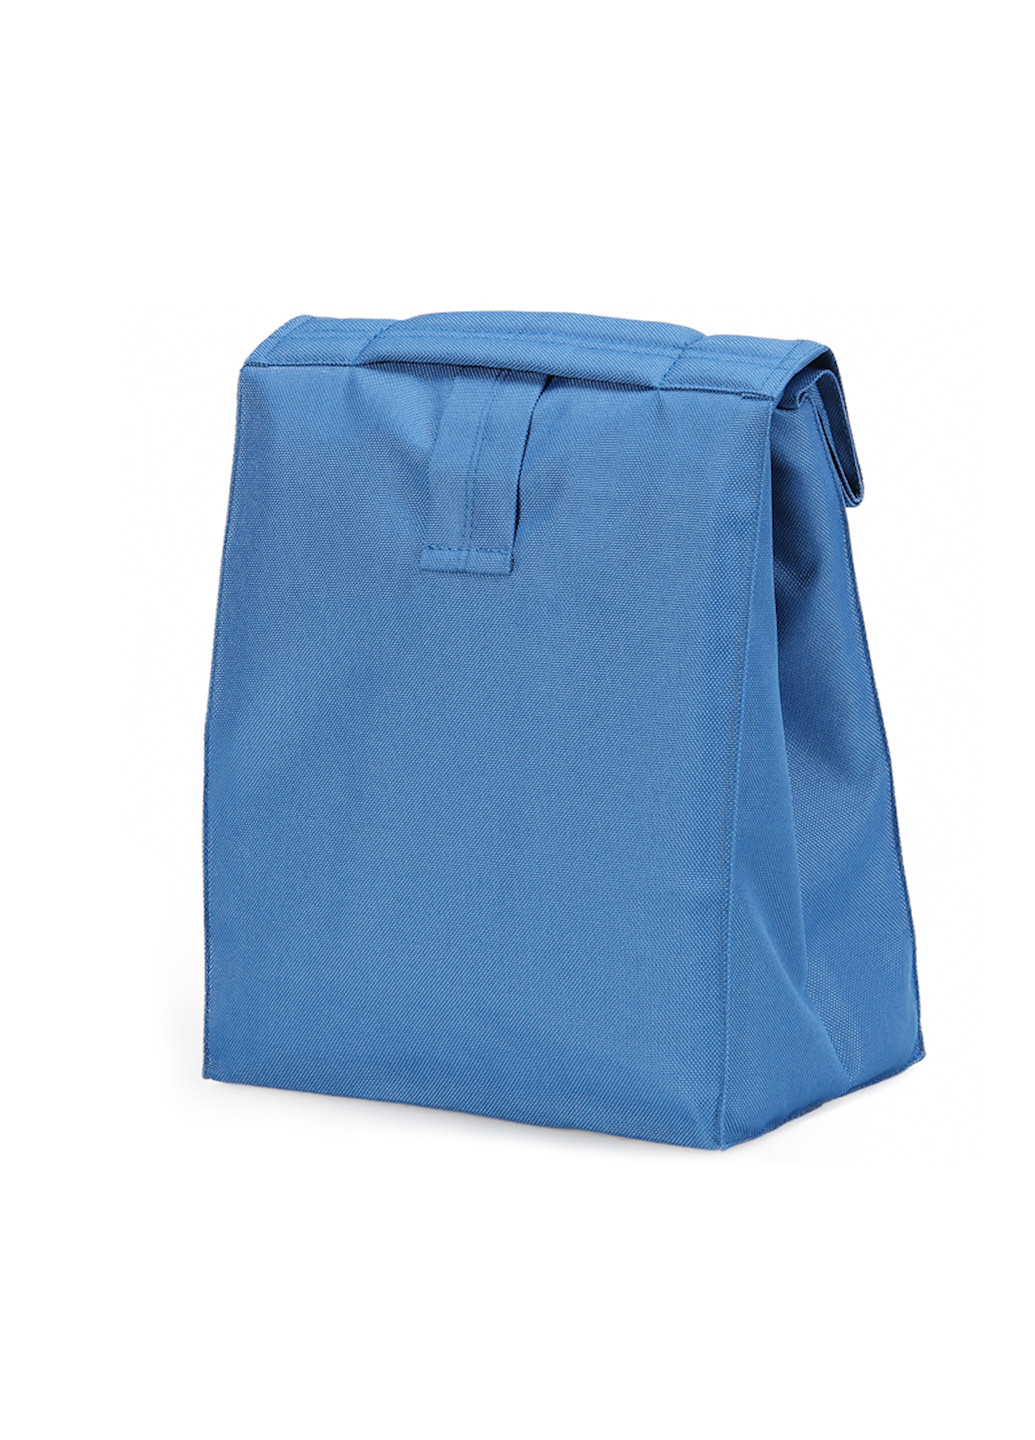 Термосумка ланч бэг М голубая Lunch bag UA m (232265096)